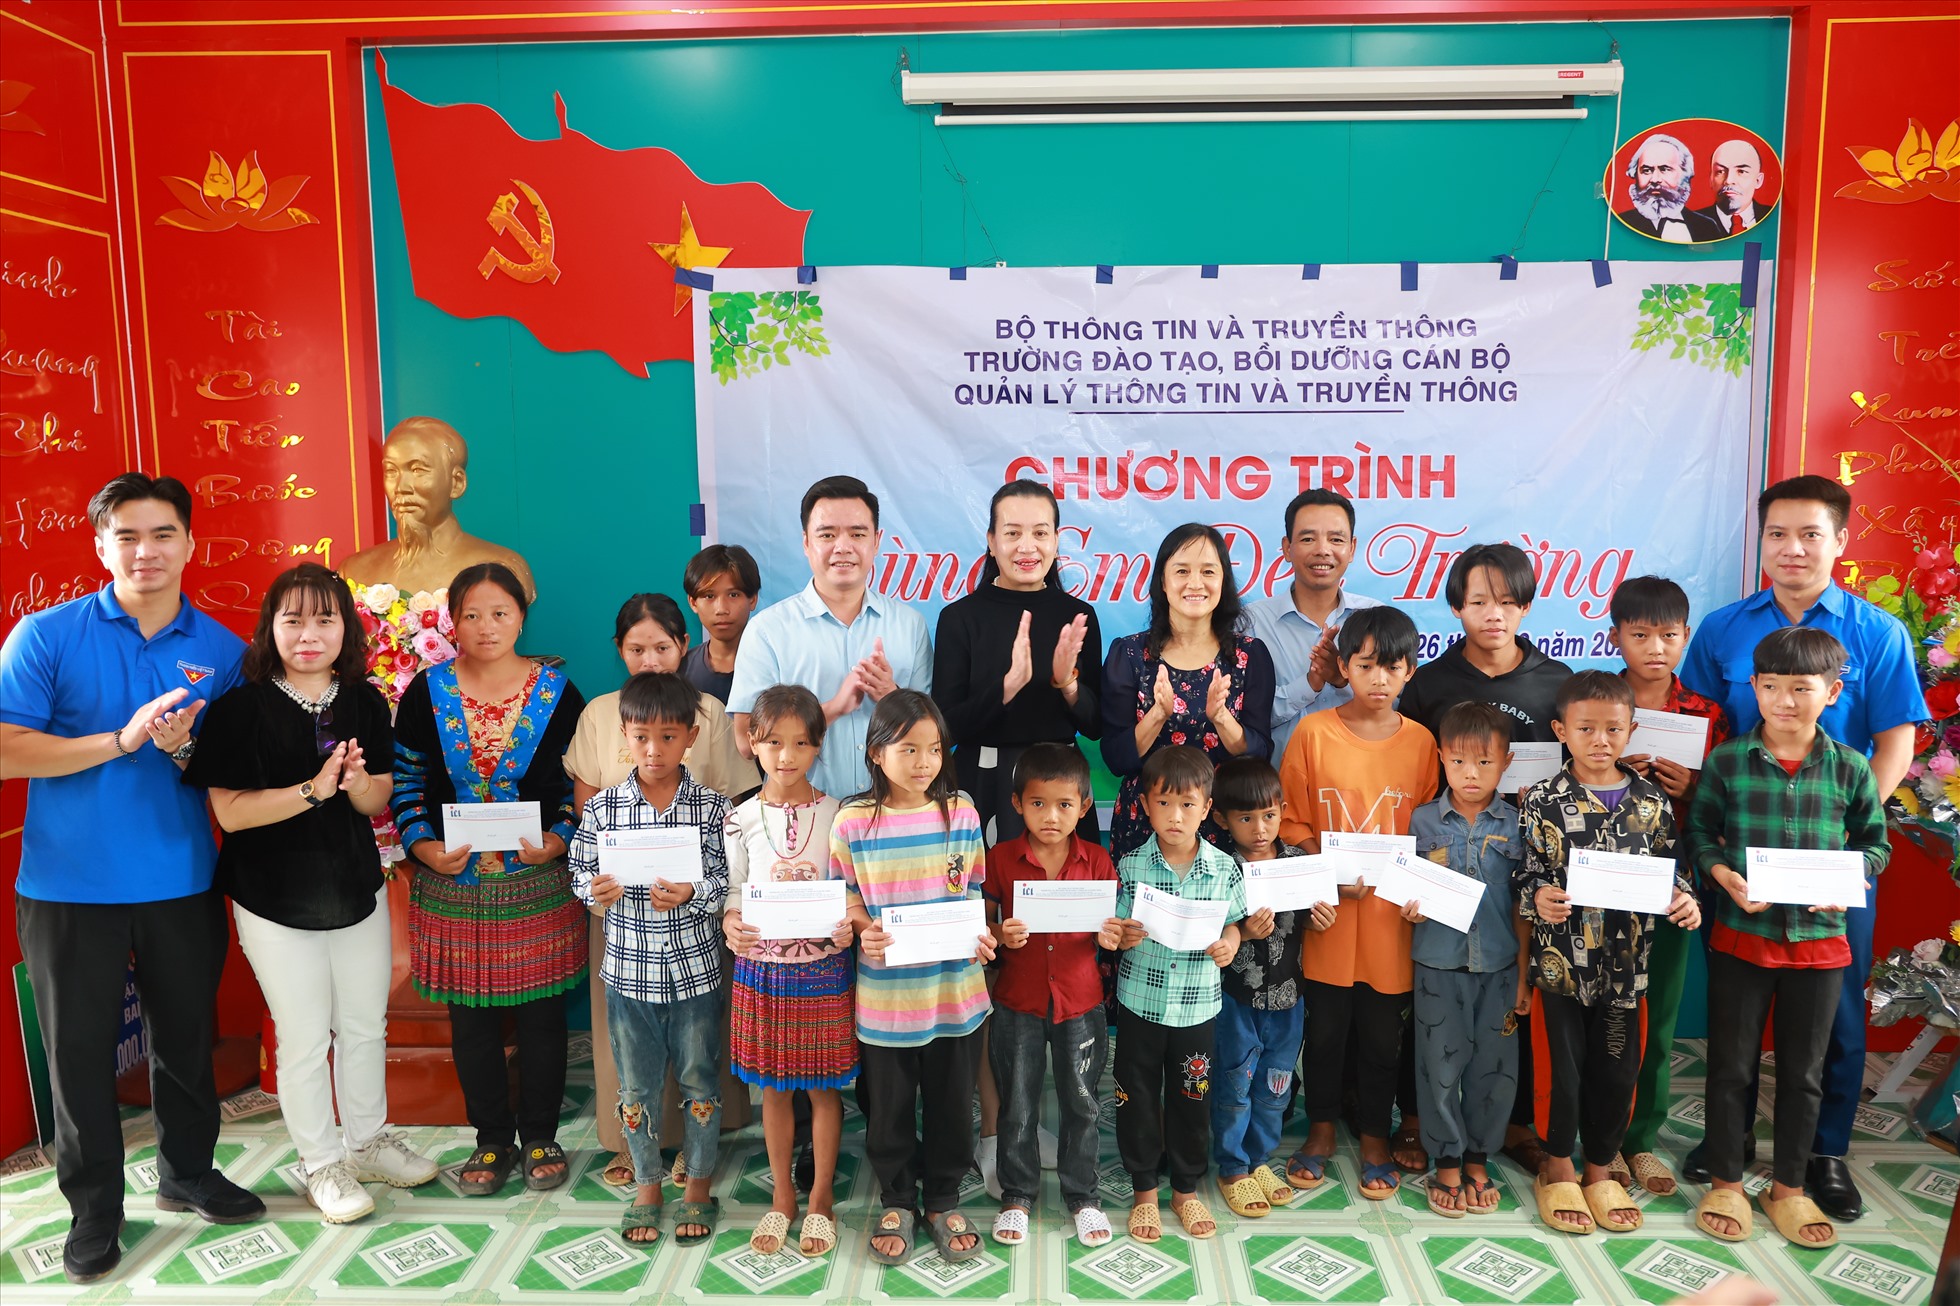 Đại diện Trường đào tạo, Vinamilk và các học viên lớp tập huấn cùng đến thăm, tặng quà cho các em nhỏ có hoàn cảnh khó khăn, học tập tốt tại xã Trung Chải, huyện Nậm Nhùn, tỉnh Lai Châu.